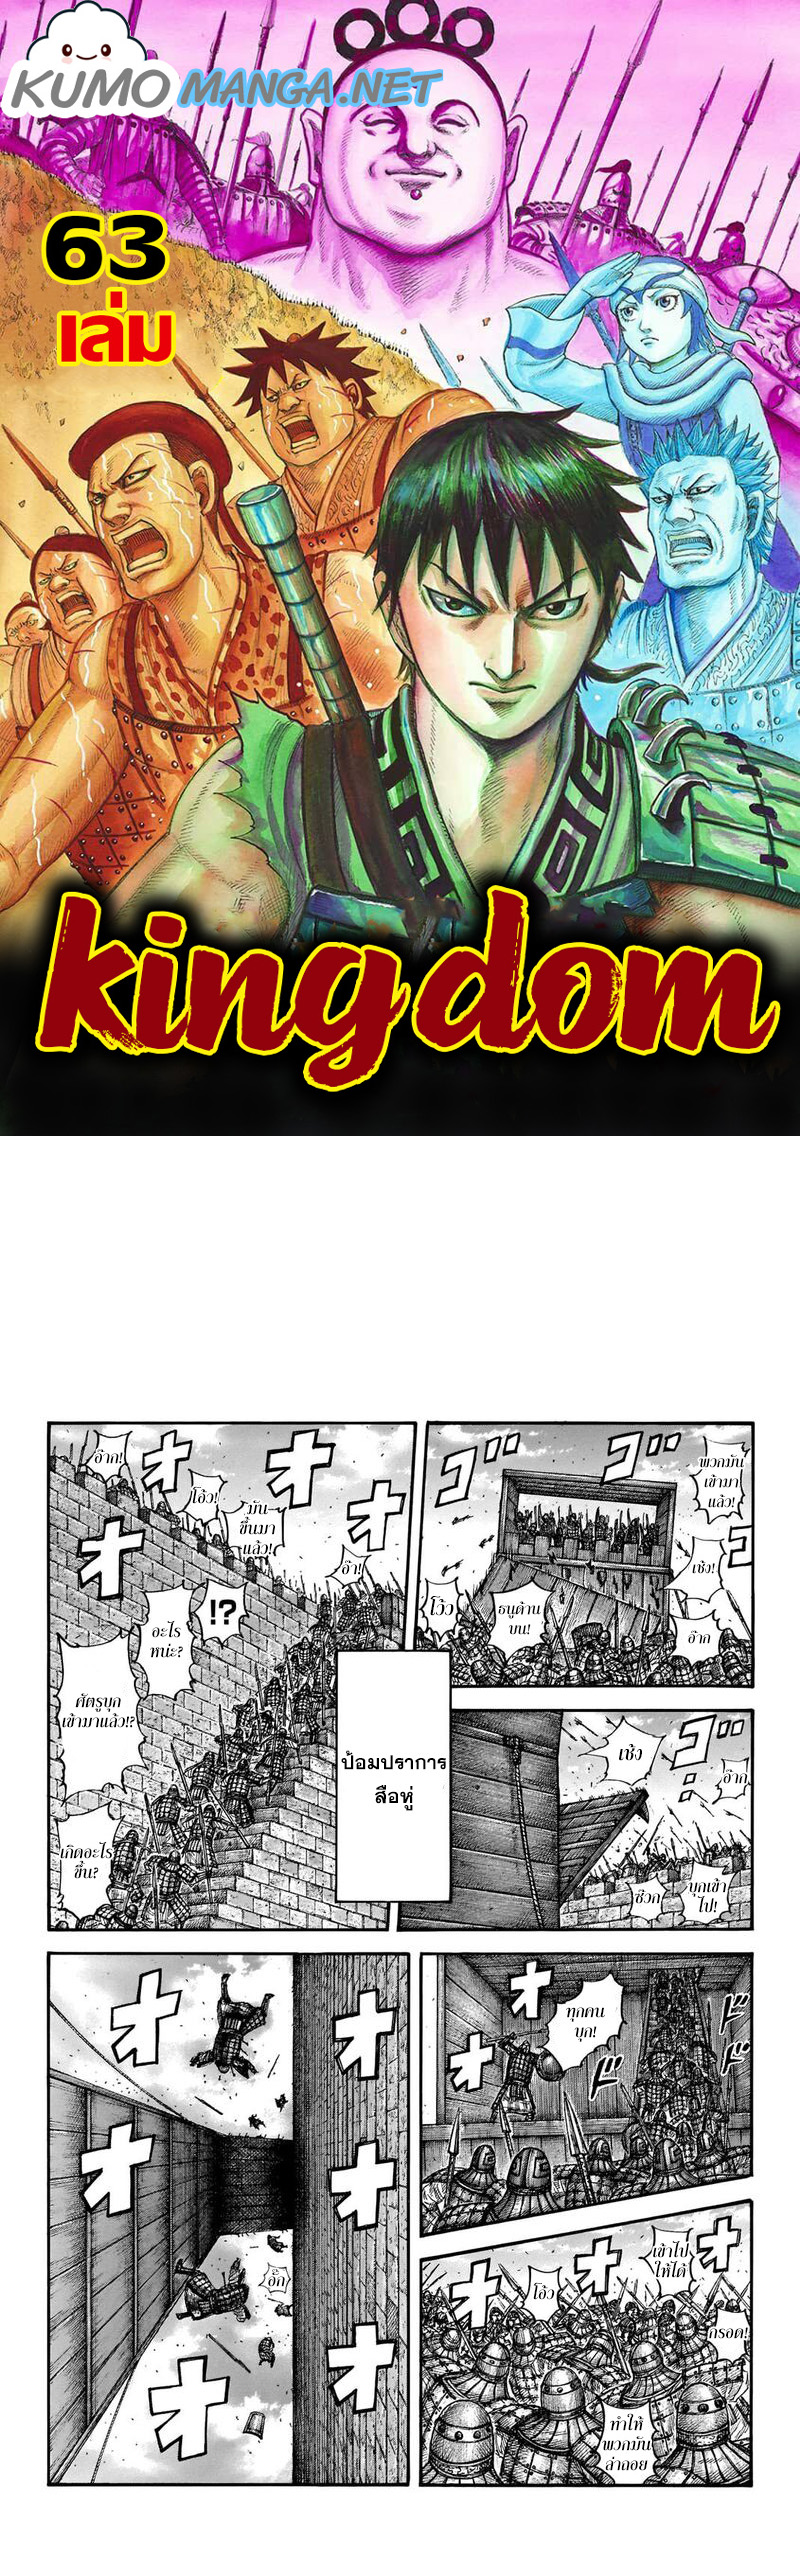 Kingdom à¸à¸­à¸à¸à¸µà¹ 658 (1)